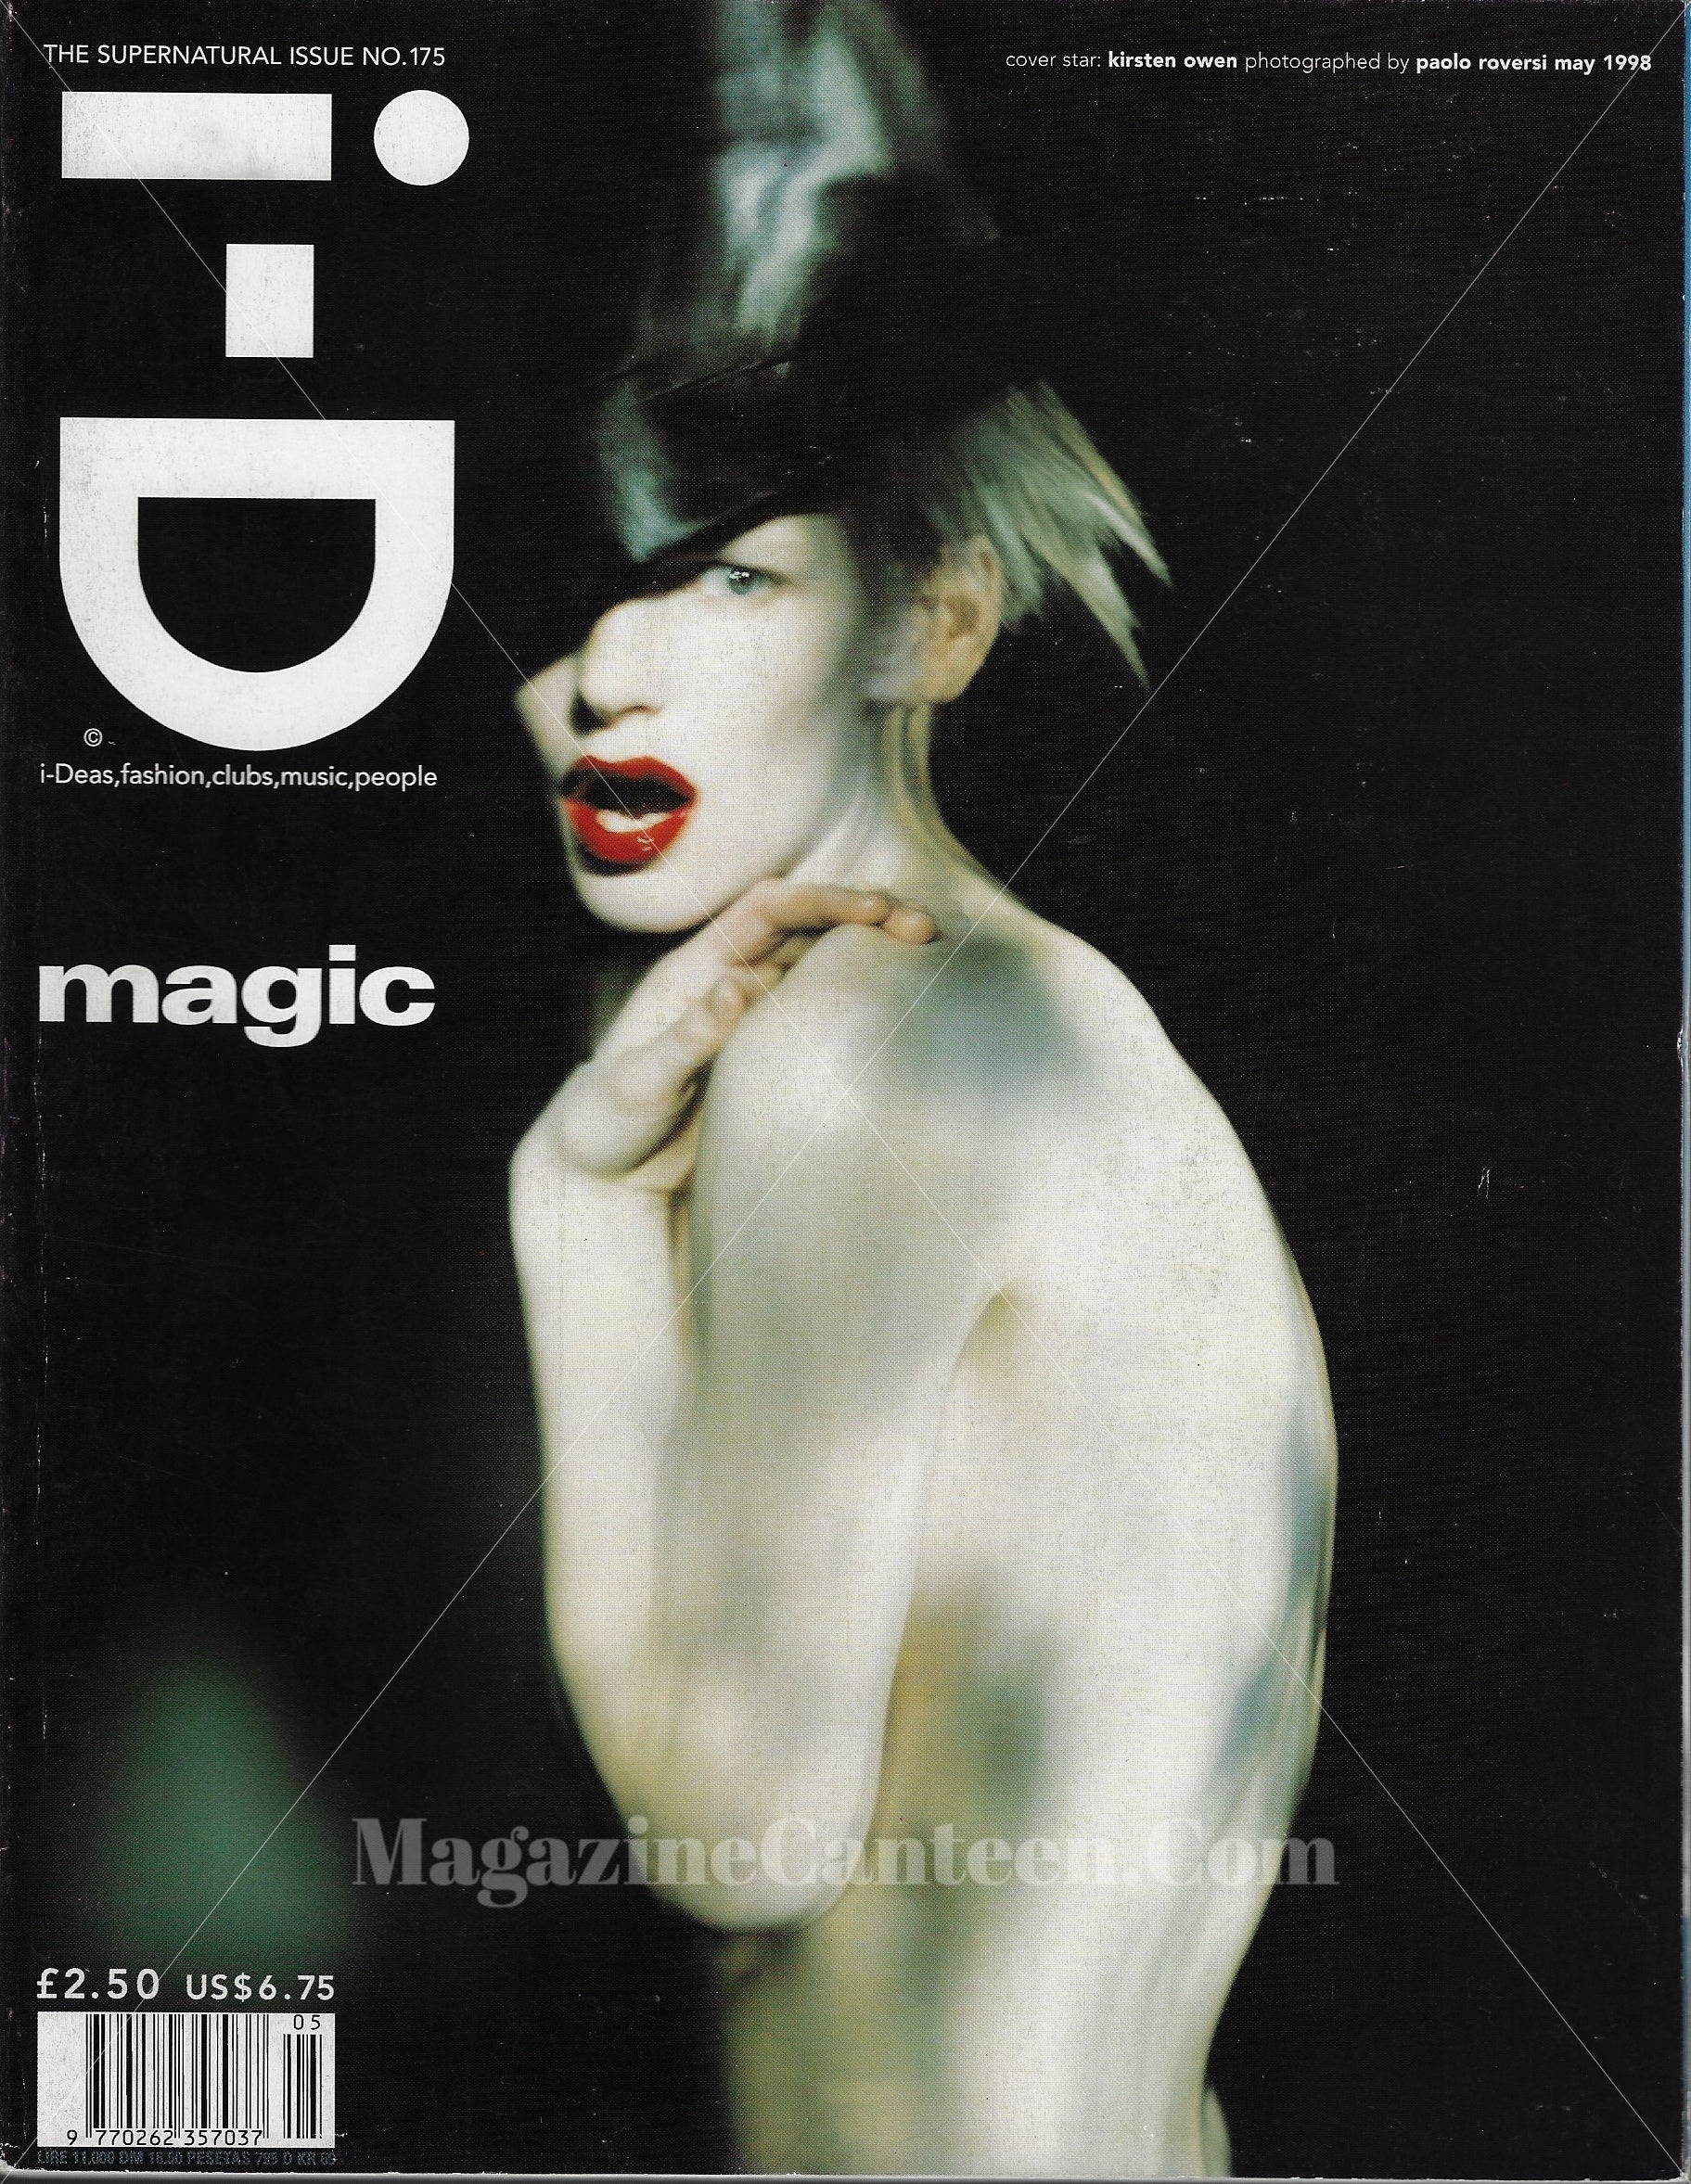 I-D Magazine 175 - Kirsten Owen 1998